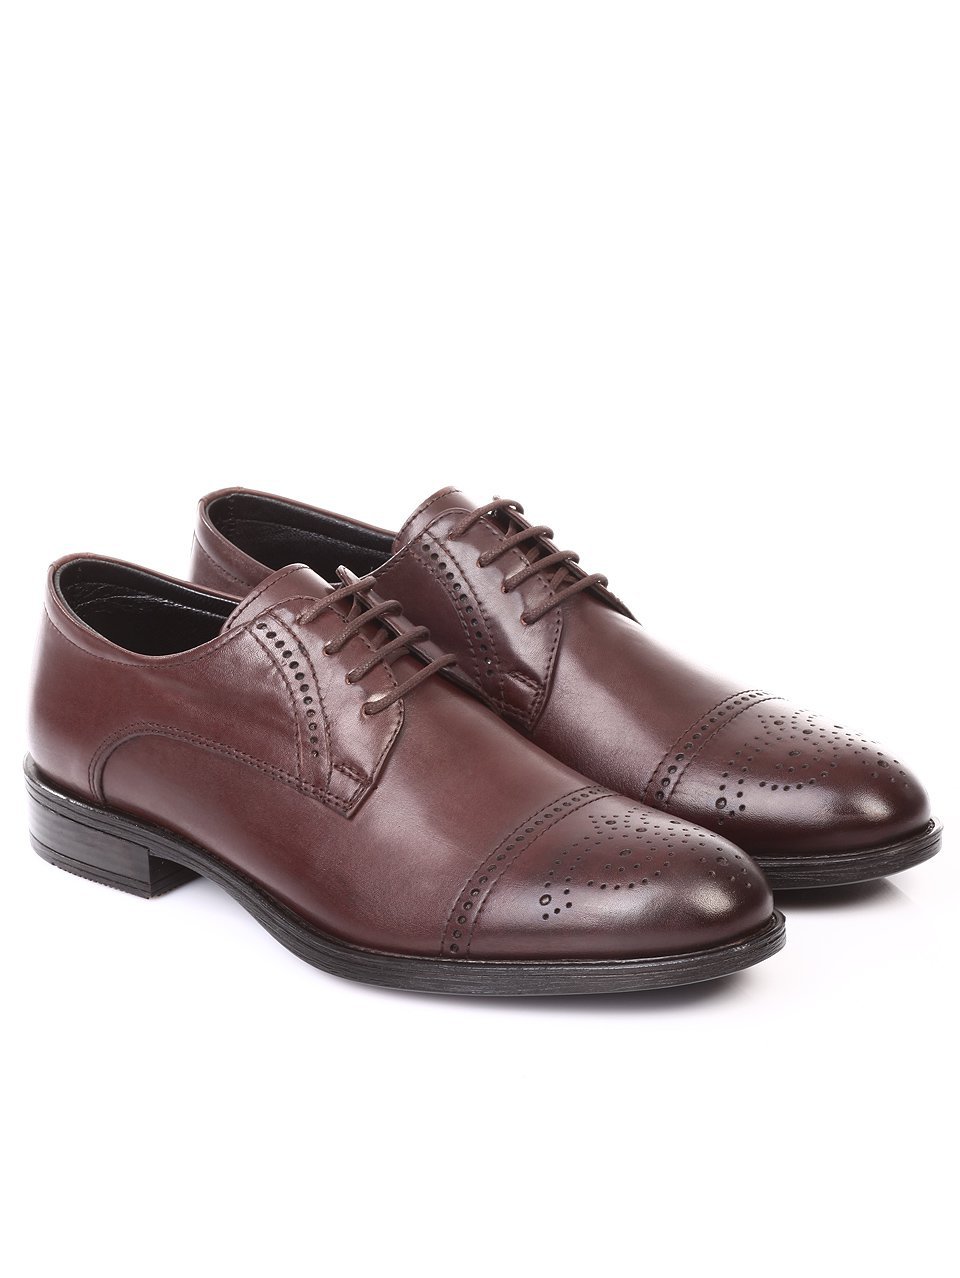 Елегантни мъжки обувки от естествена кожа 7AT-171201 brown